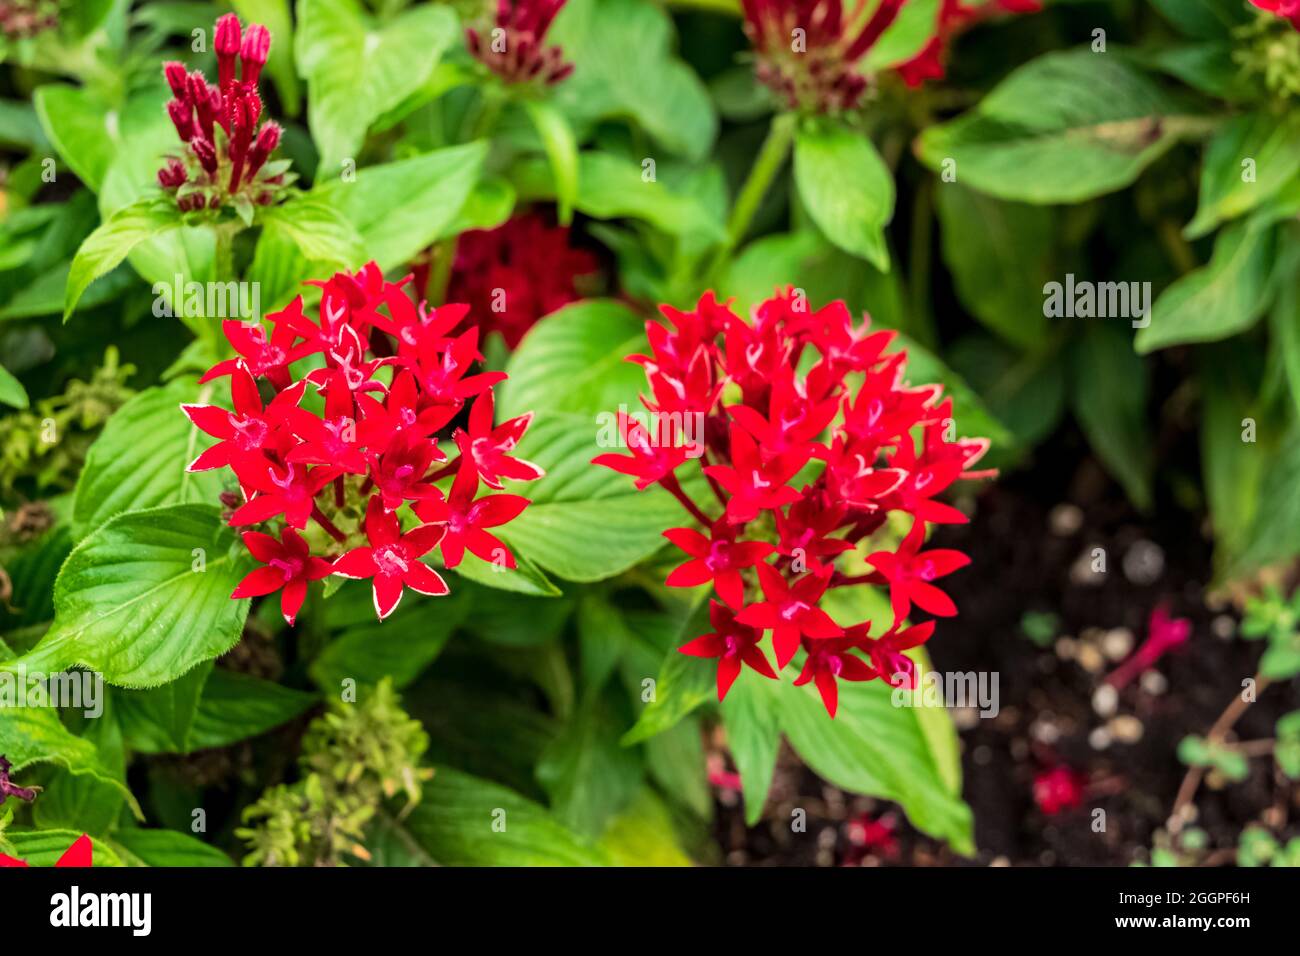 Primo piano di una bella pianta di stelle egiziane con i suoi fiori caratteristici. Notate l'incredibile colore rosso dei petali. Foto Stock